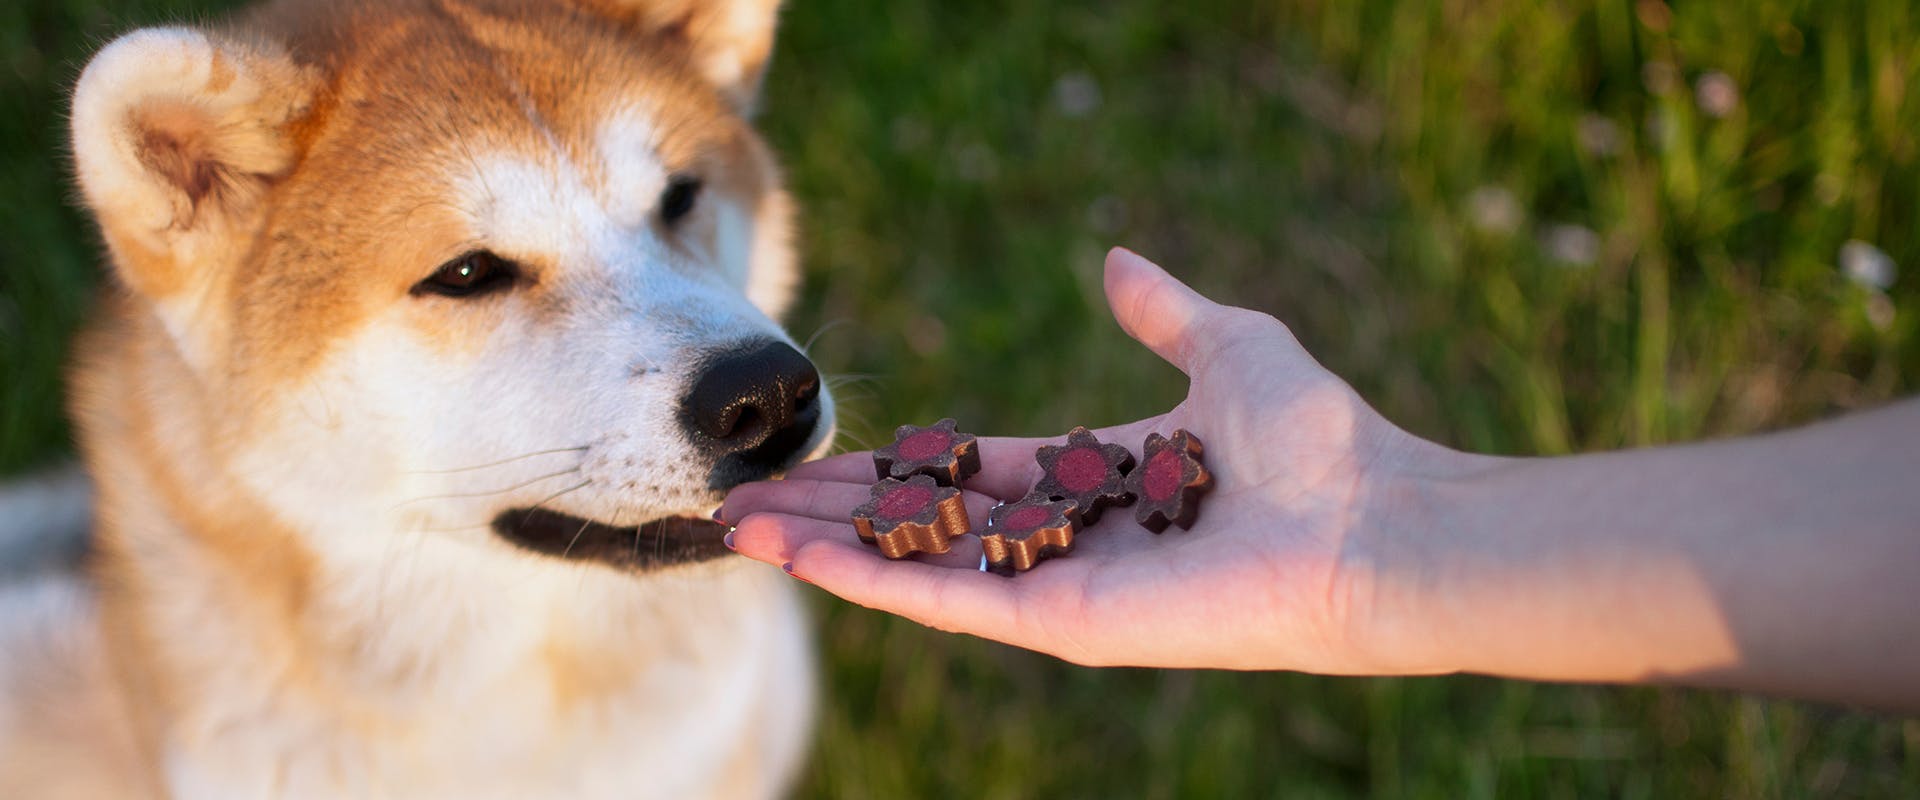 Ένας ιαπωνικός σκύλος ακίτα λαμβάνει λιχουδιές κατά τη διάρκεια εκπαίδευσης